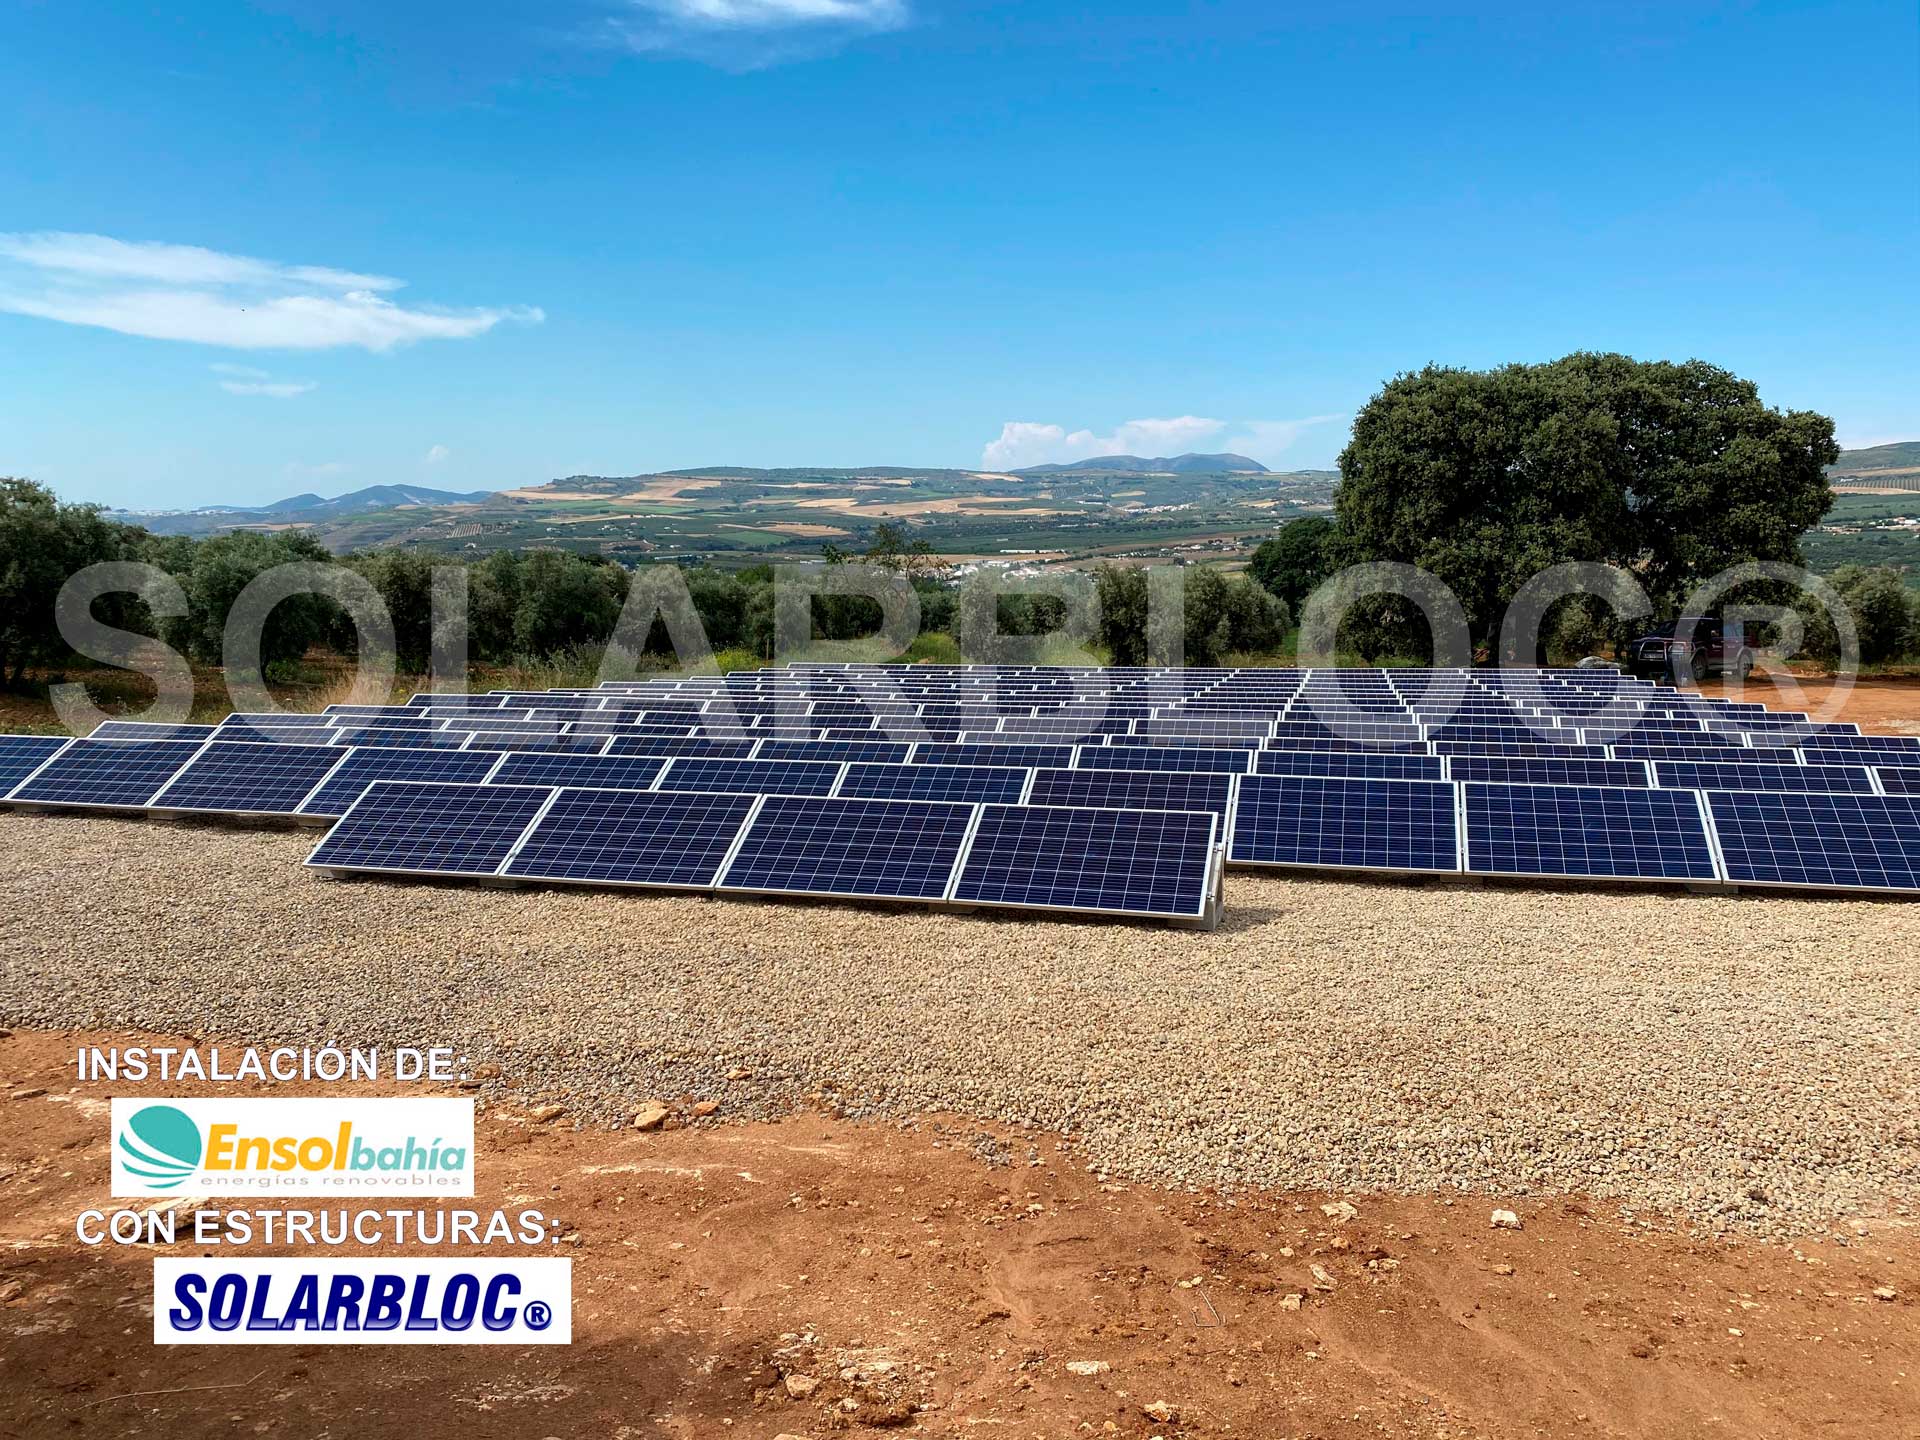 Soportes paneles fotovoltaicos Ensol Bahía SOLARBLOC